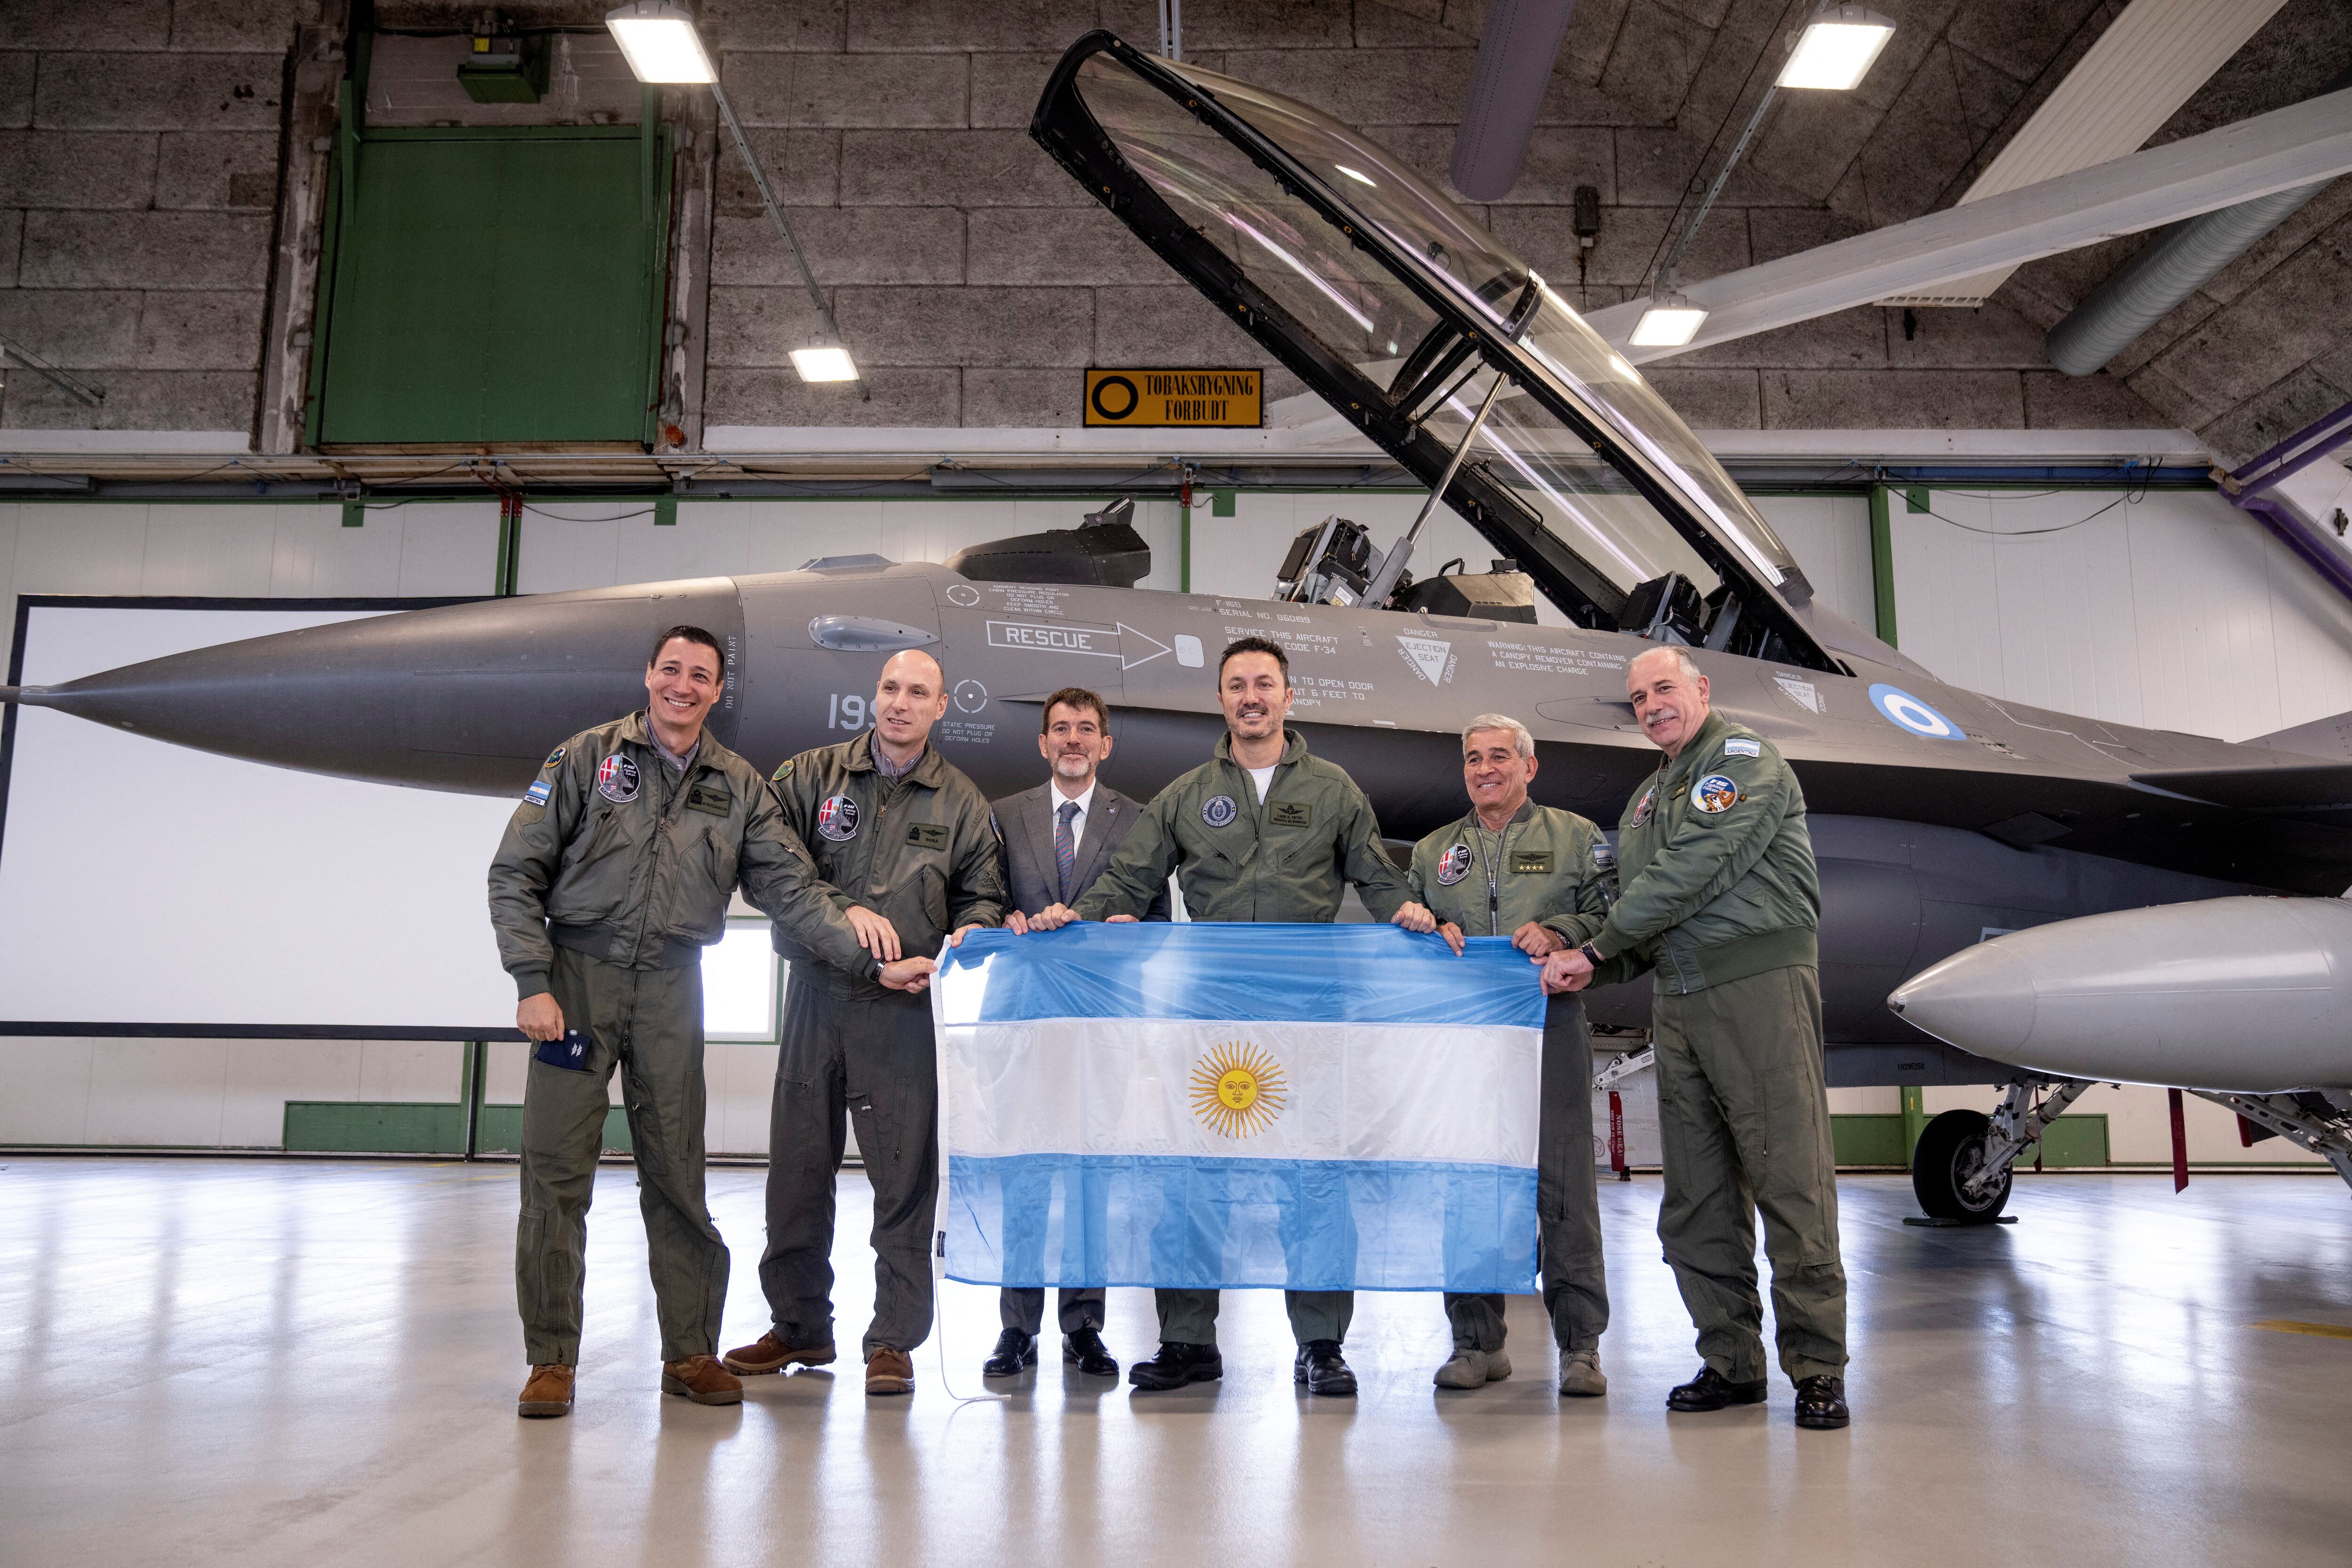 Encabezada por Luis Petri, la delegación argentina posa con la bandera al pie de uno de los aviones